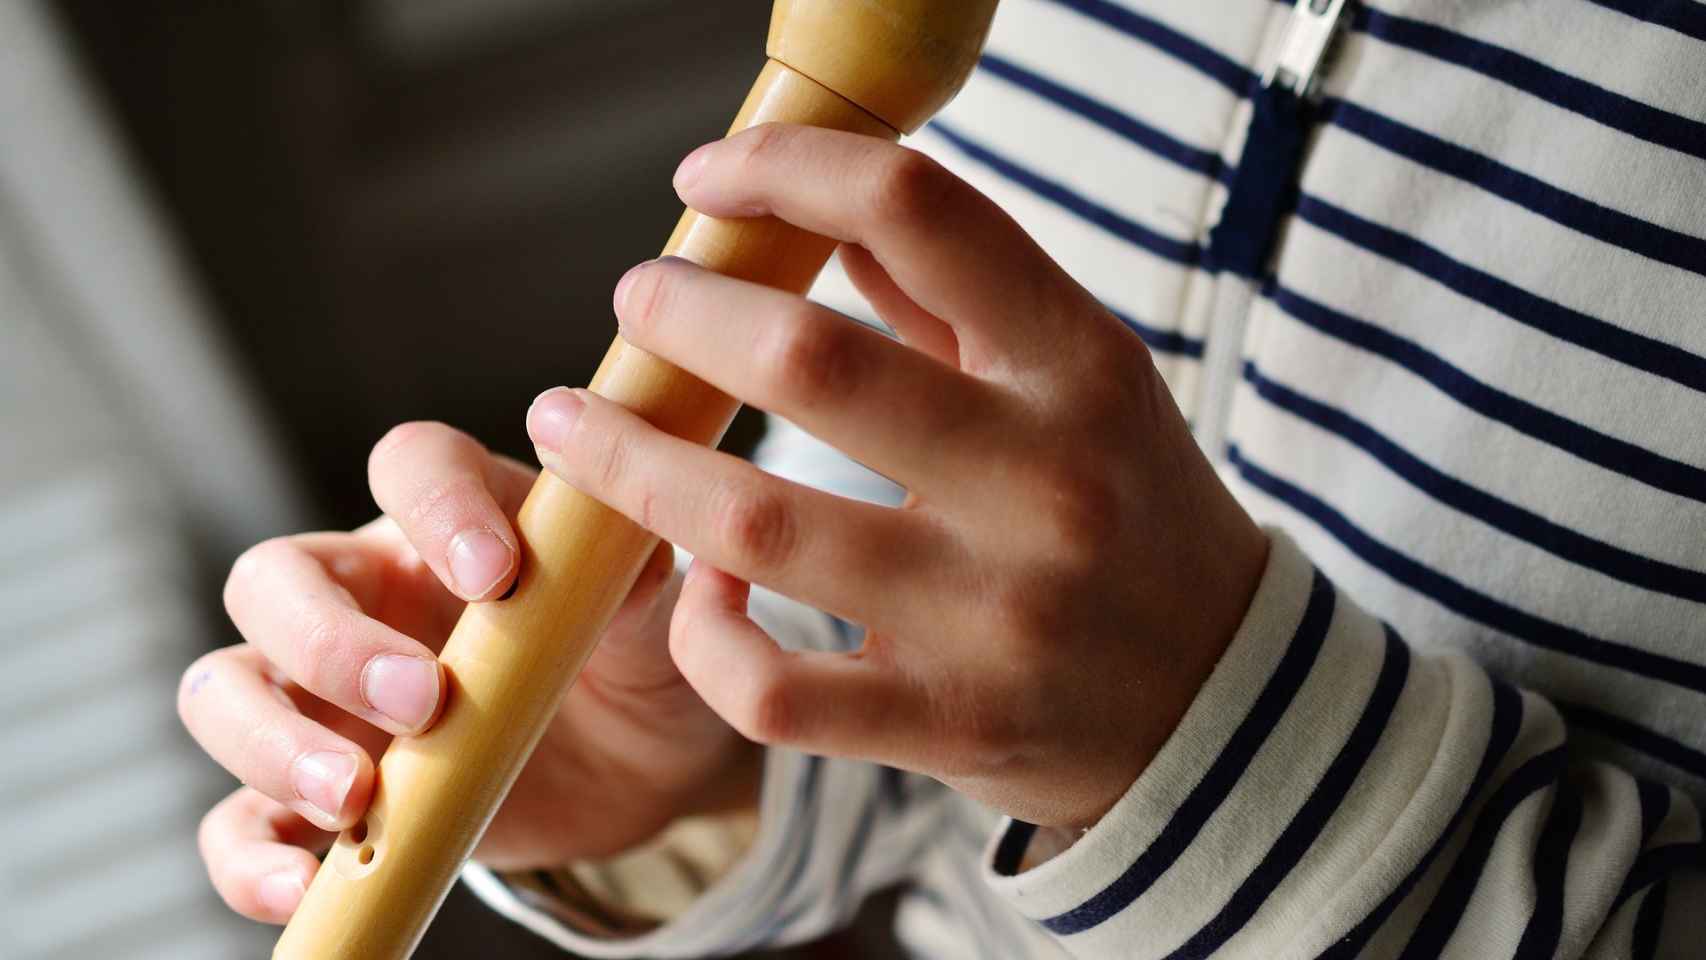 juez Cría apoyo Cómo aprender a tocar la flauta de forma fácil